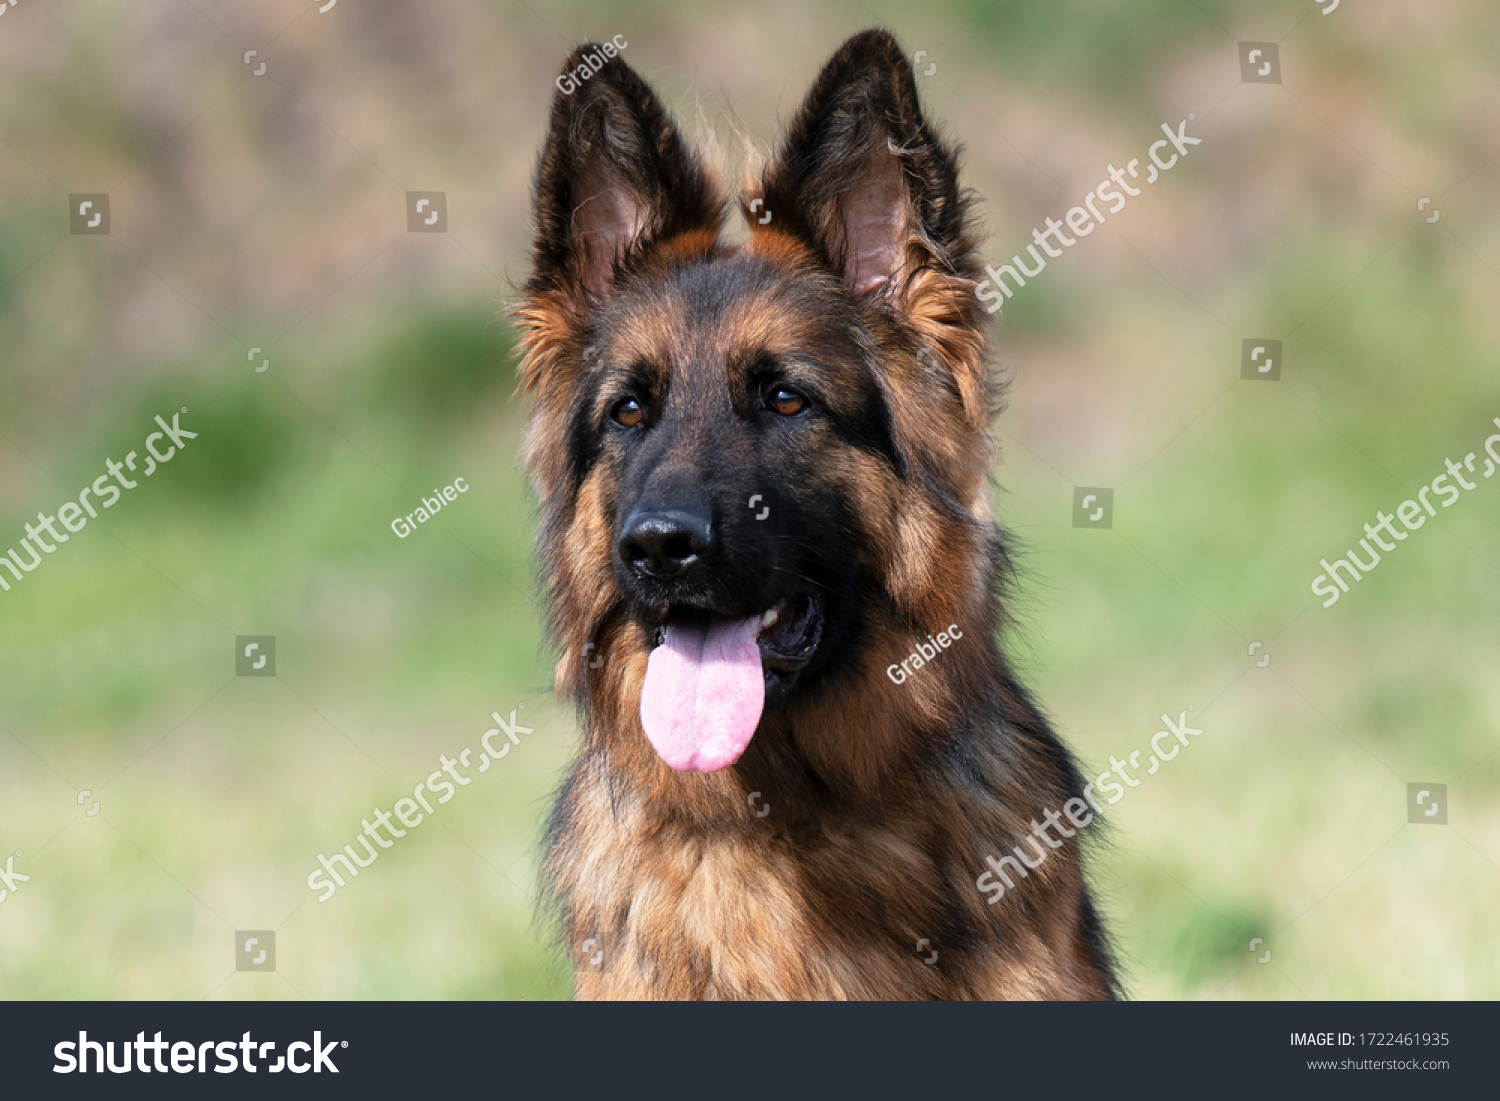 German Shepherd dog face looking nice #1722461935